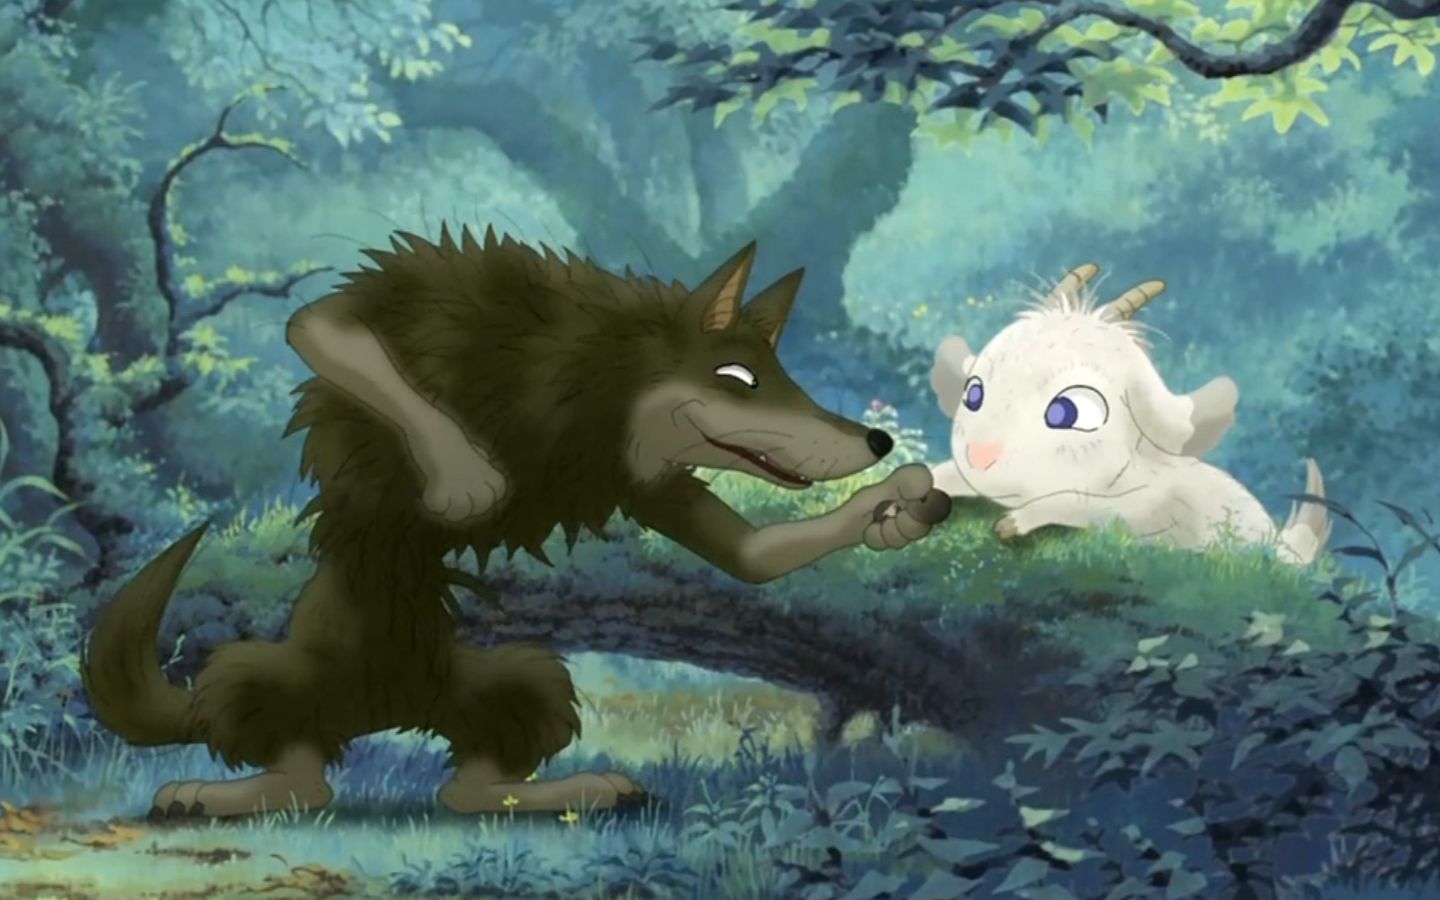 狼和羊交上朋友,强忍挨饿,也不吃对方!日本高分动画电影